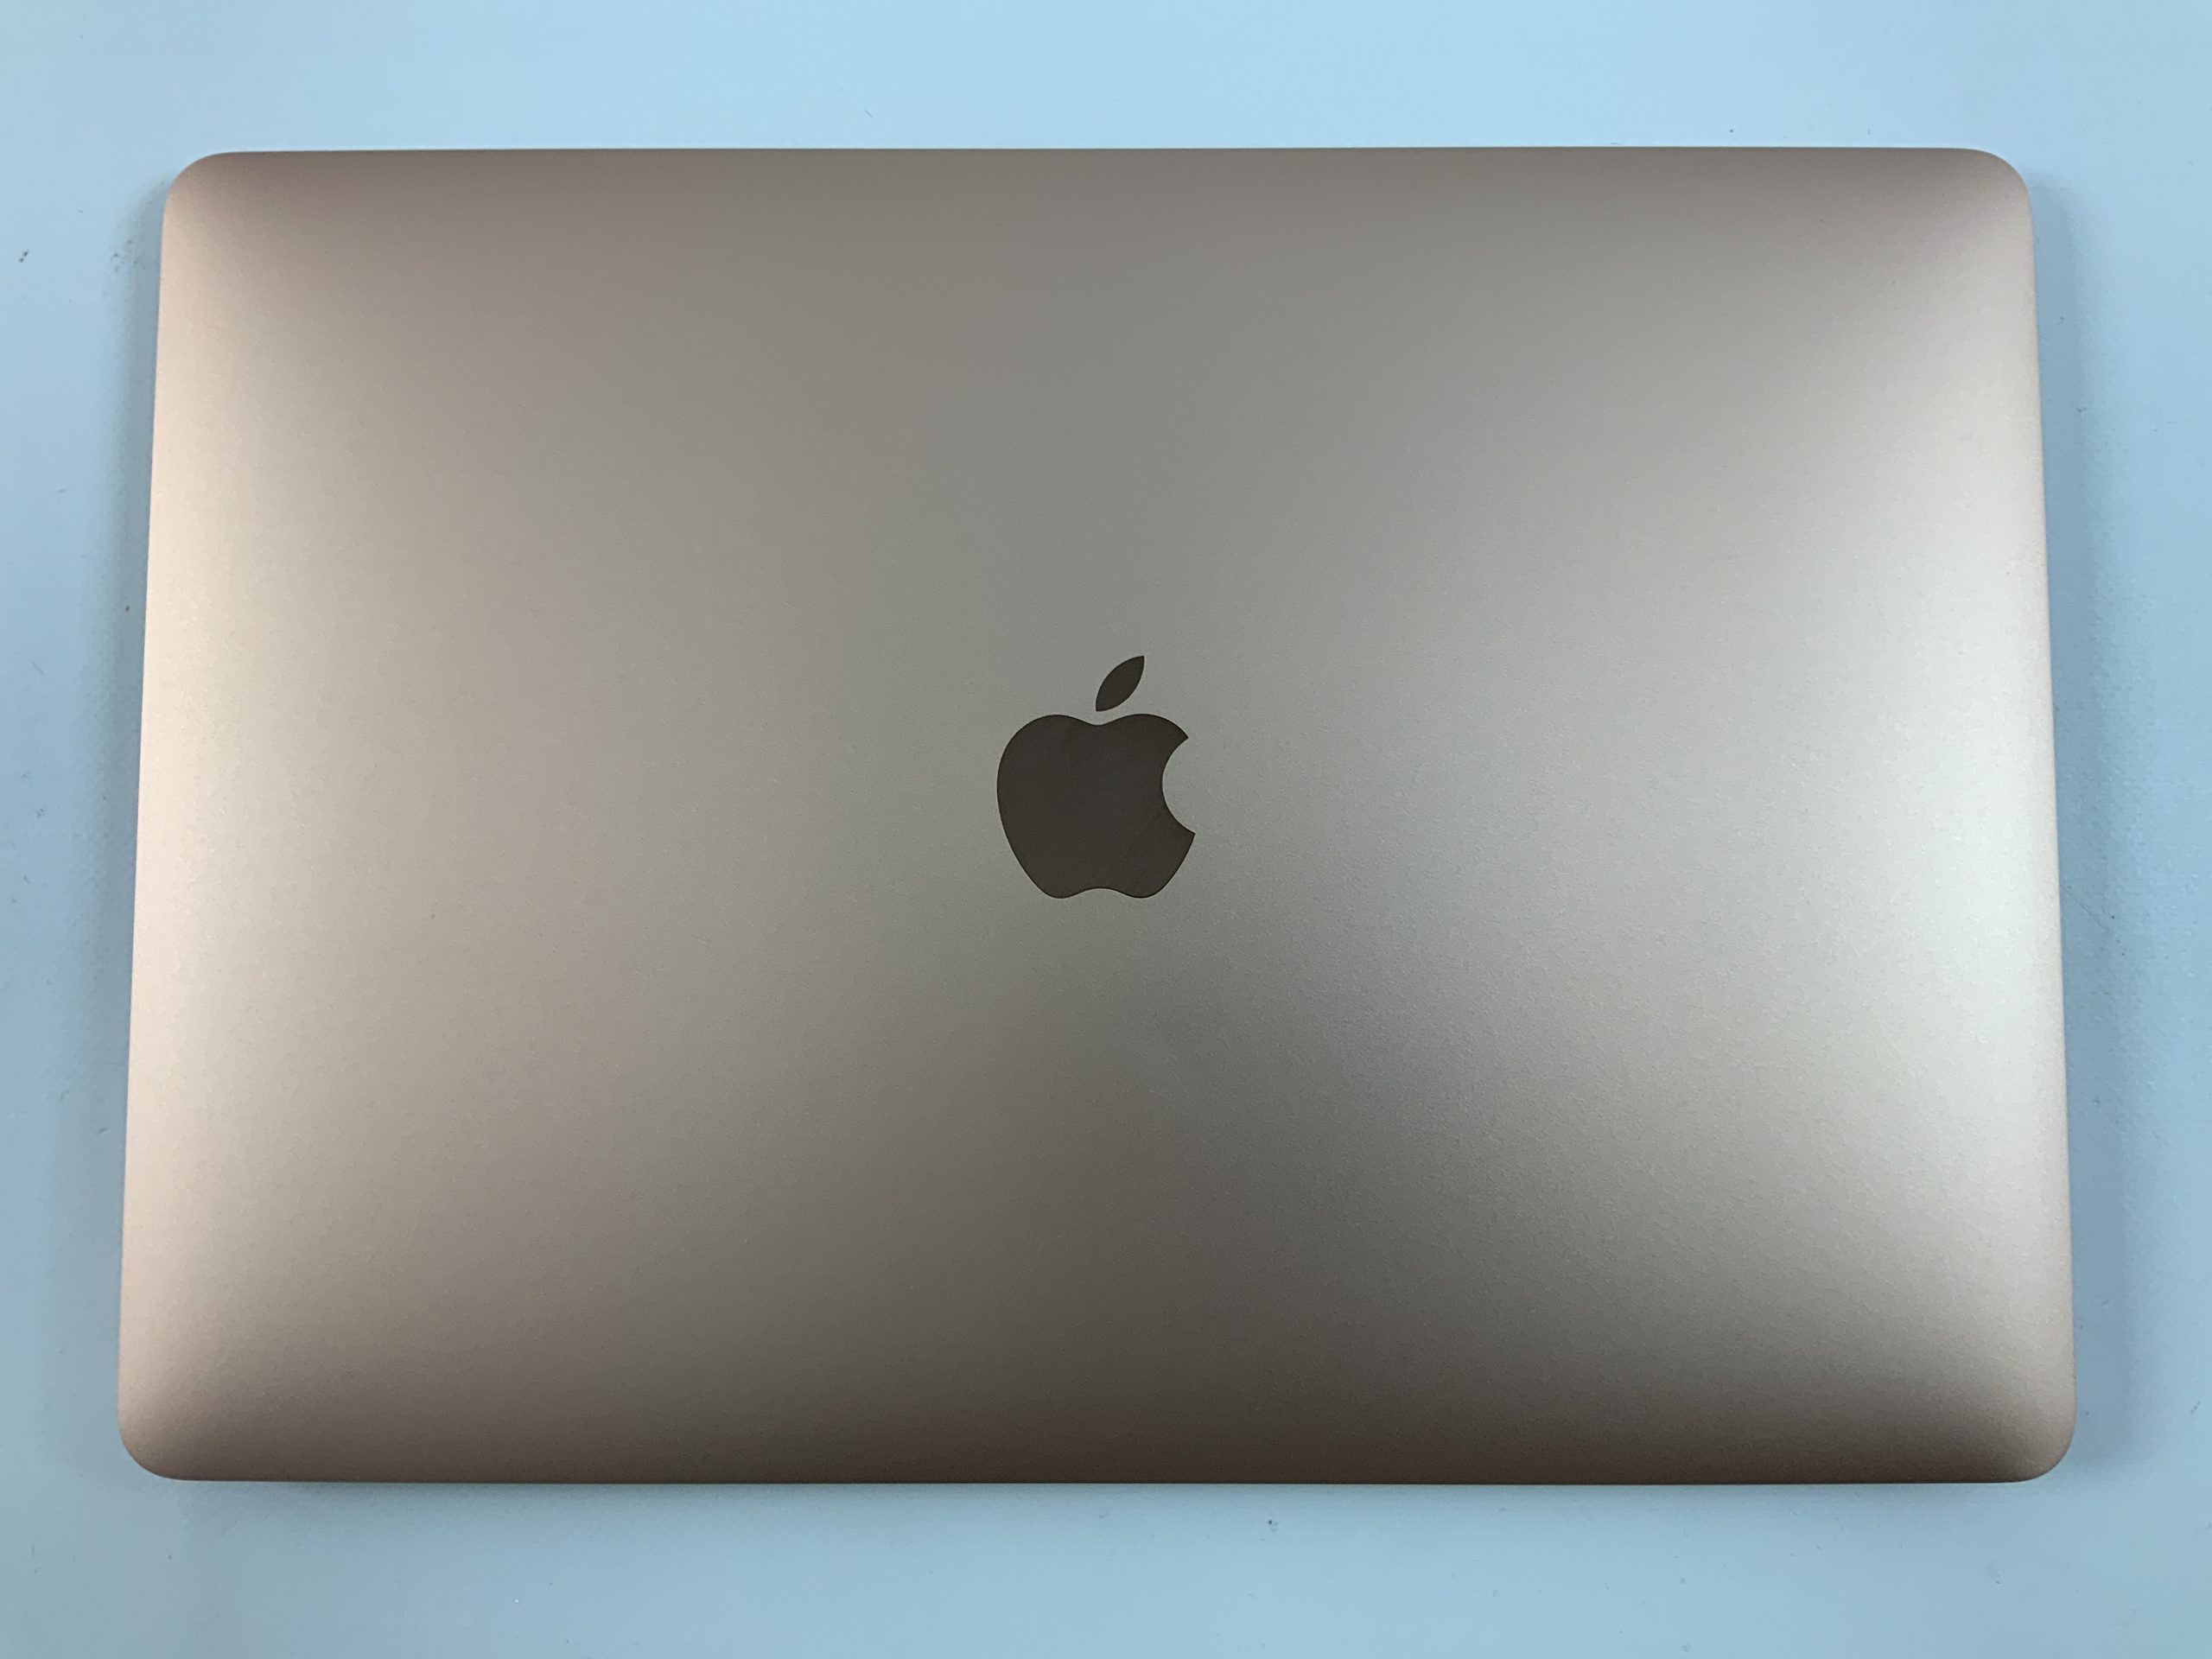 MacBook Air 13" Mid 2019 (Intel Core i5 1.6 GHz 8 GB RAM 256 GB SSD), Gold, Intel Core i5 1.6 GHz, 8 GB RAM, 256 GB SSD, bild 2